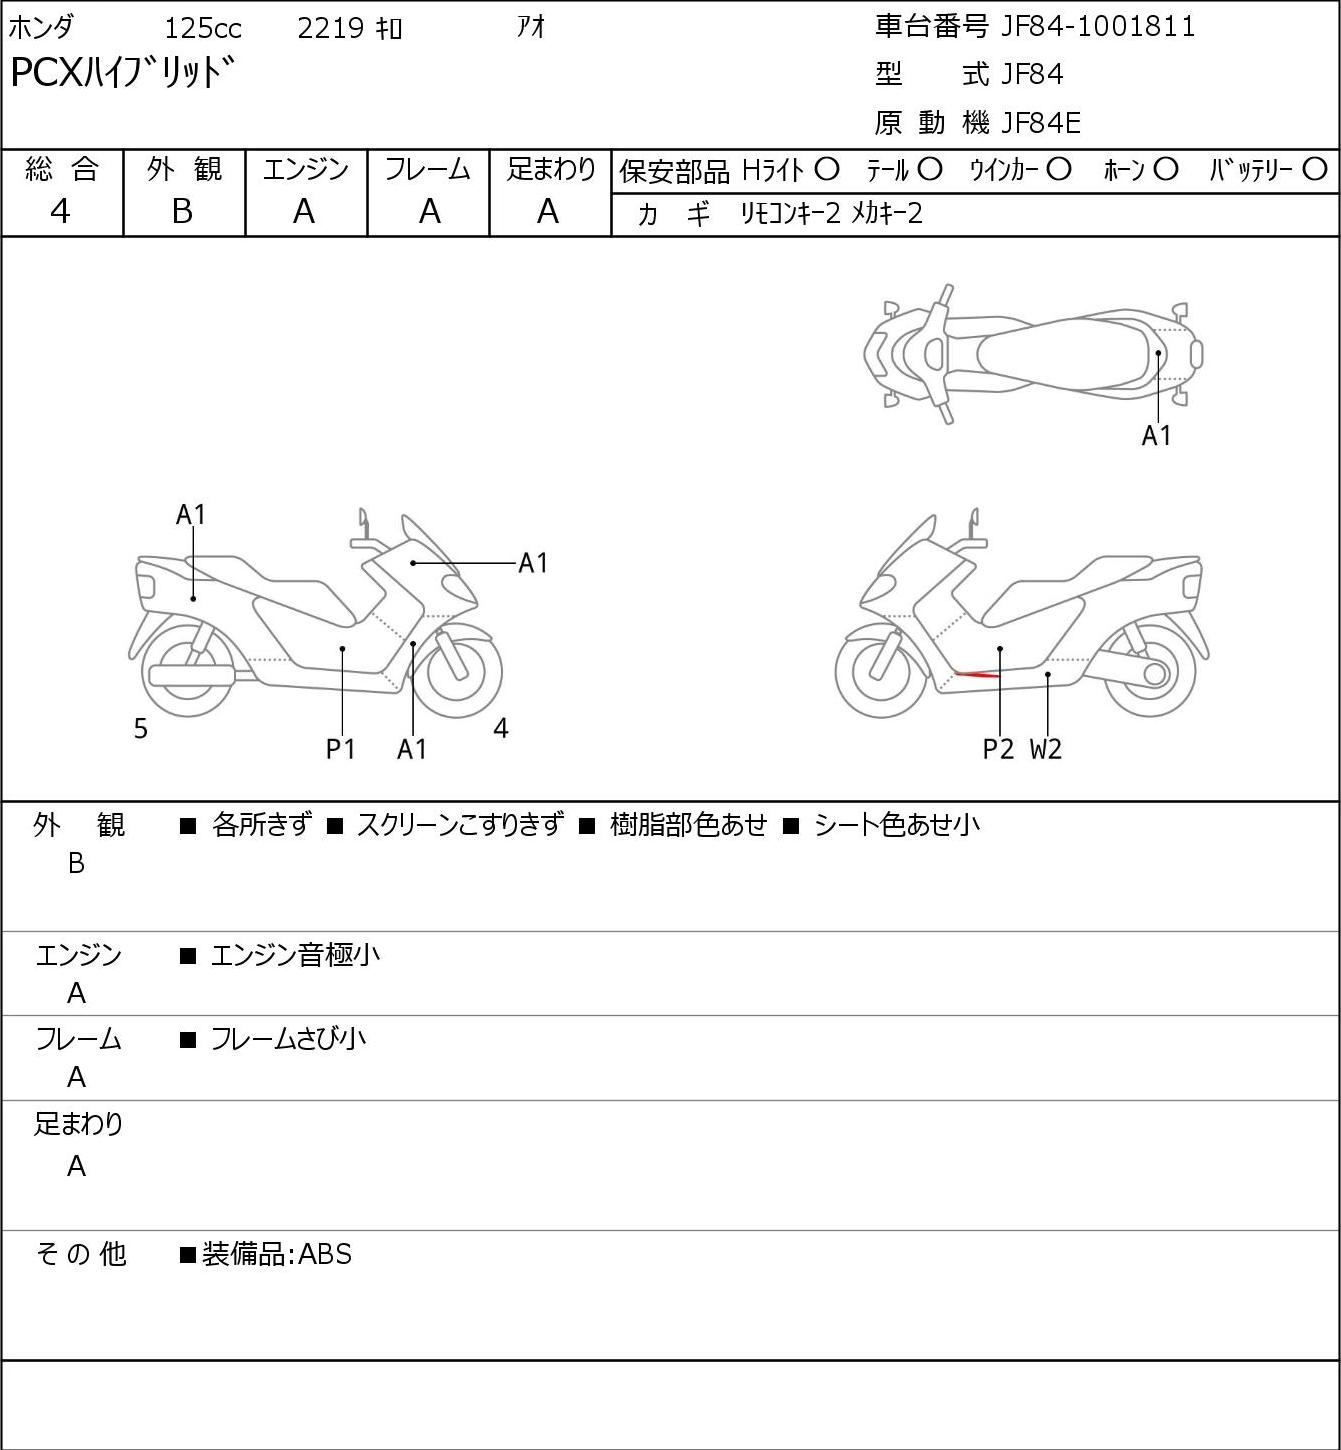 Honda PCX HYBRID JF84 - купить недорого